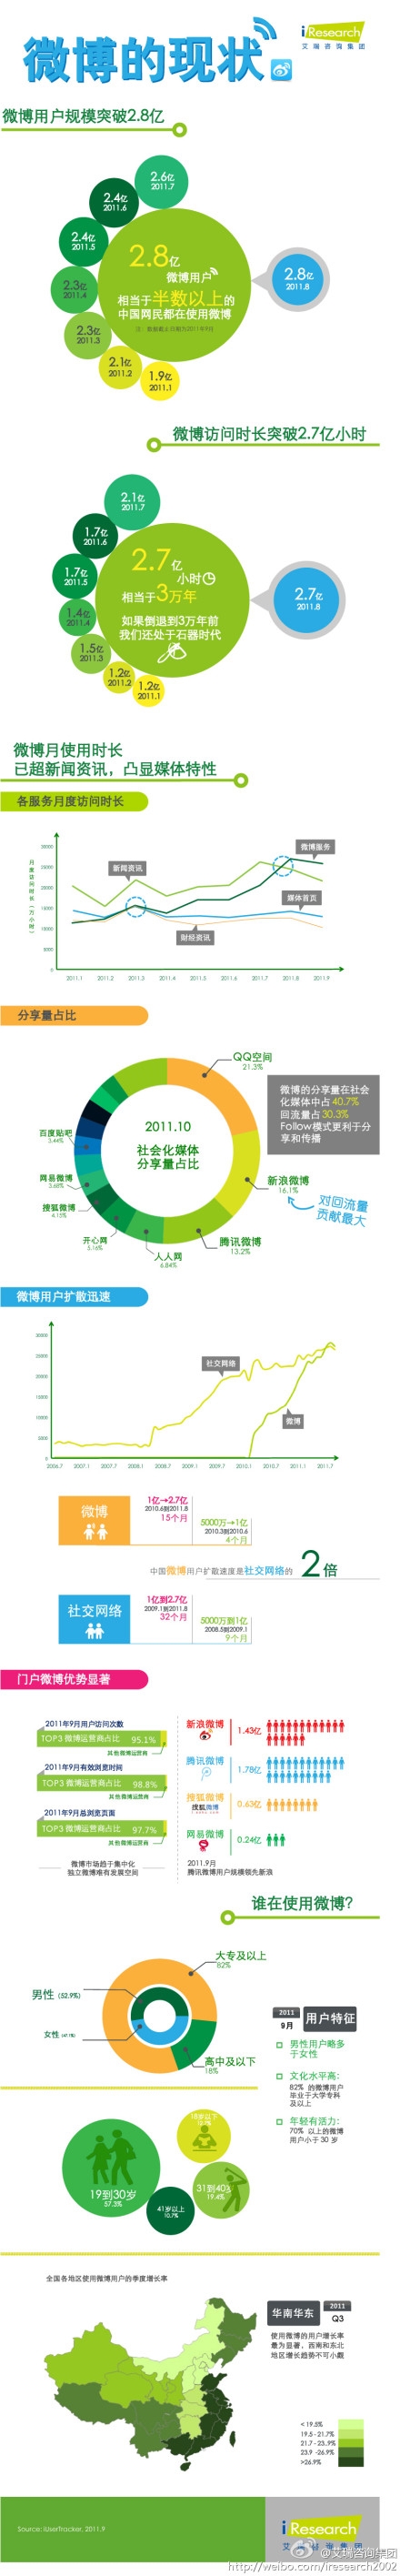 【读图时代】艾瑞咨询：2011年中国微博现状信息图